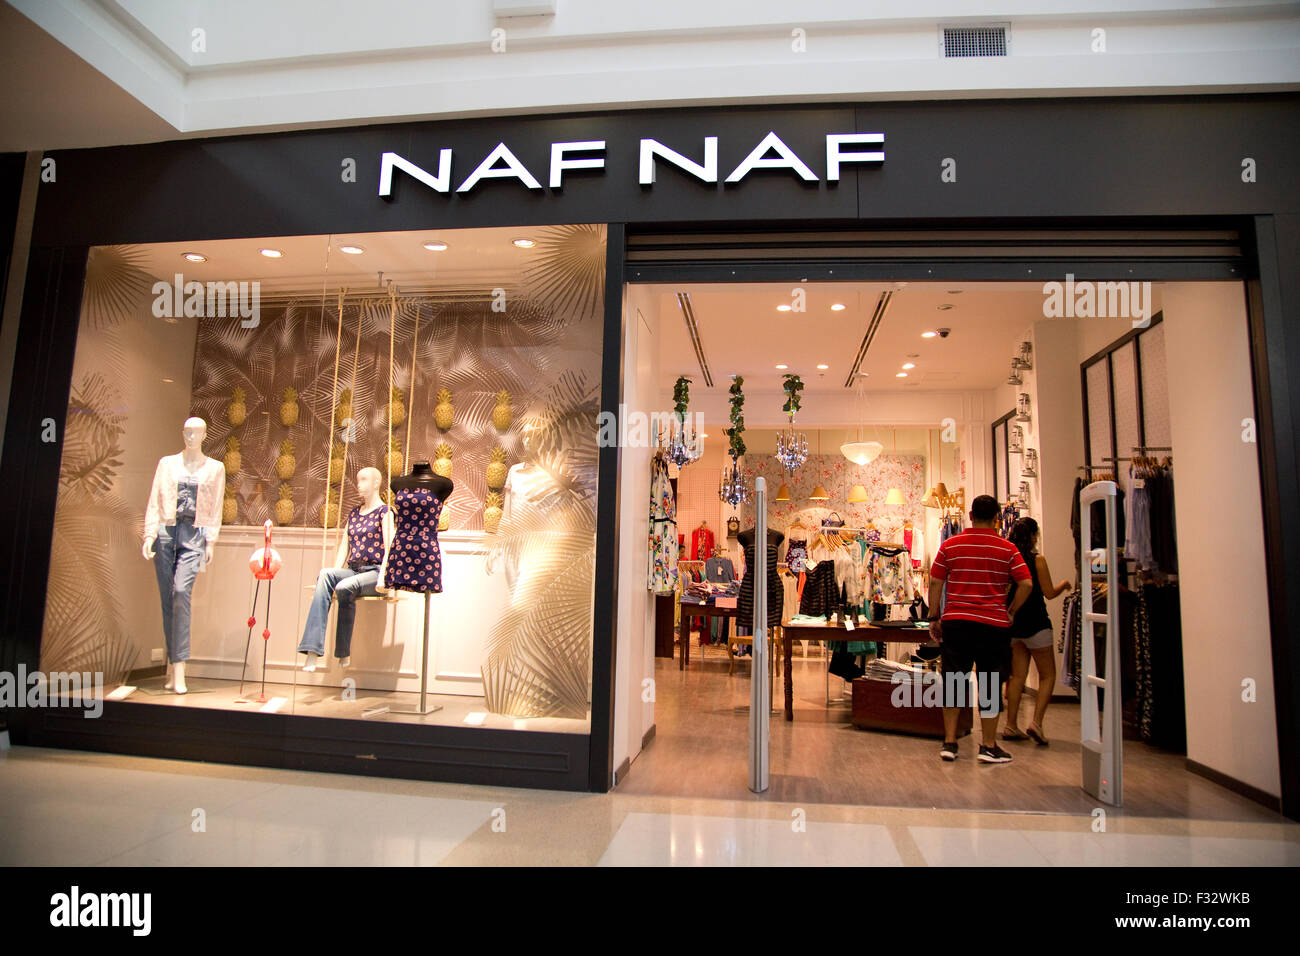 Naf naf Banque de photographies et d'images à haute résolution - Alamy